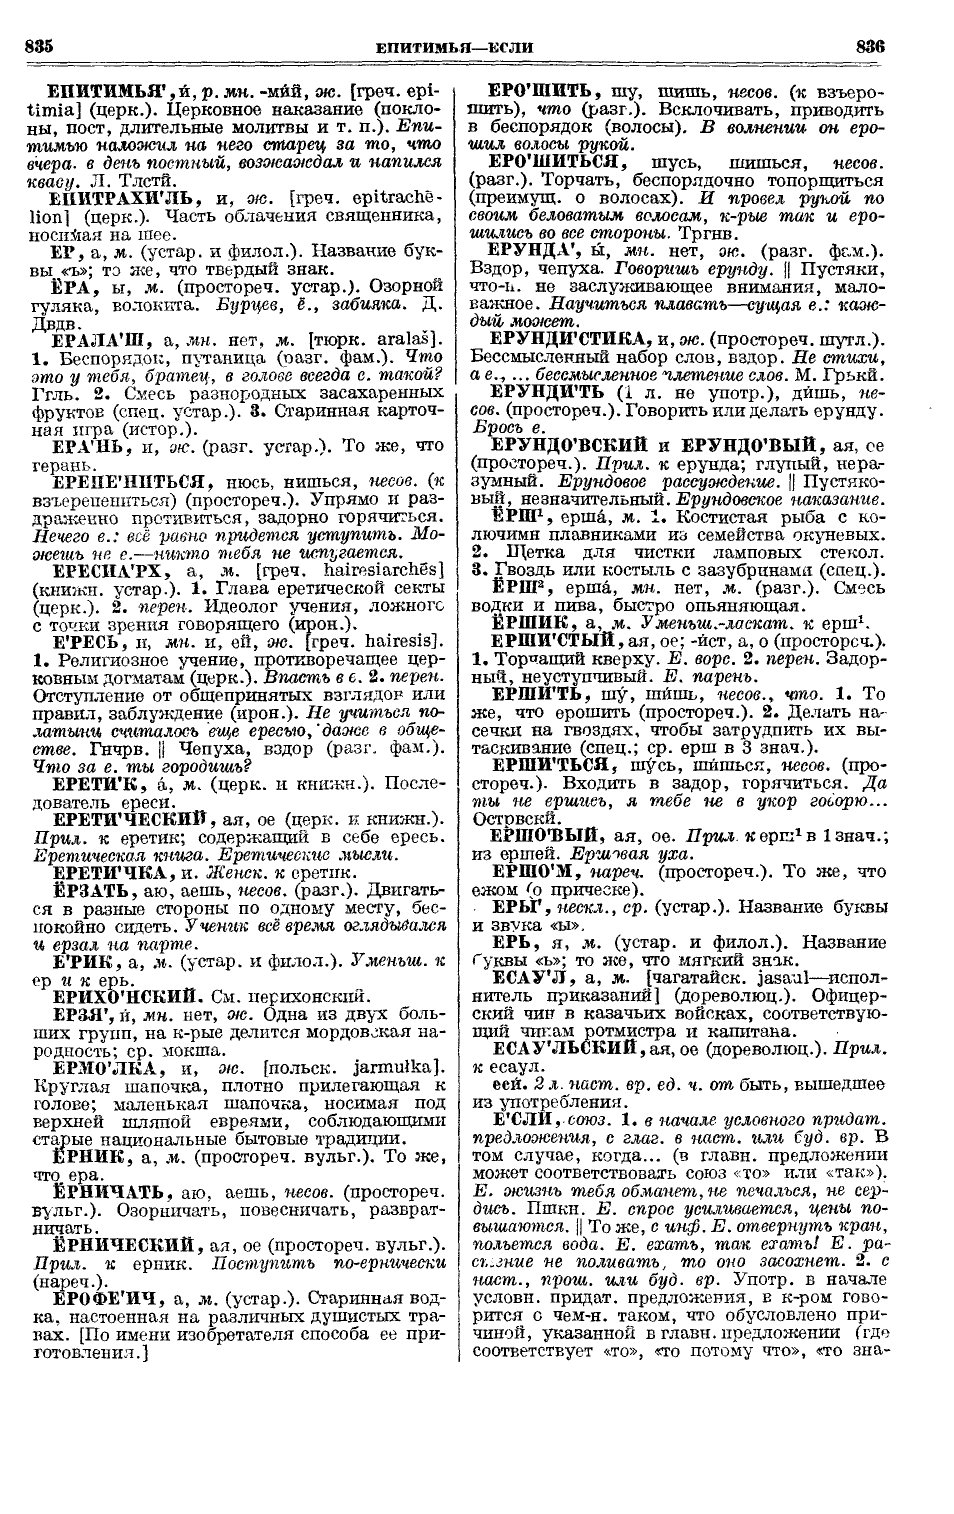 Фотокопия pdf / скан страницы 456 толкового словаря Ушакова (том 1)